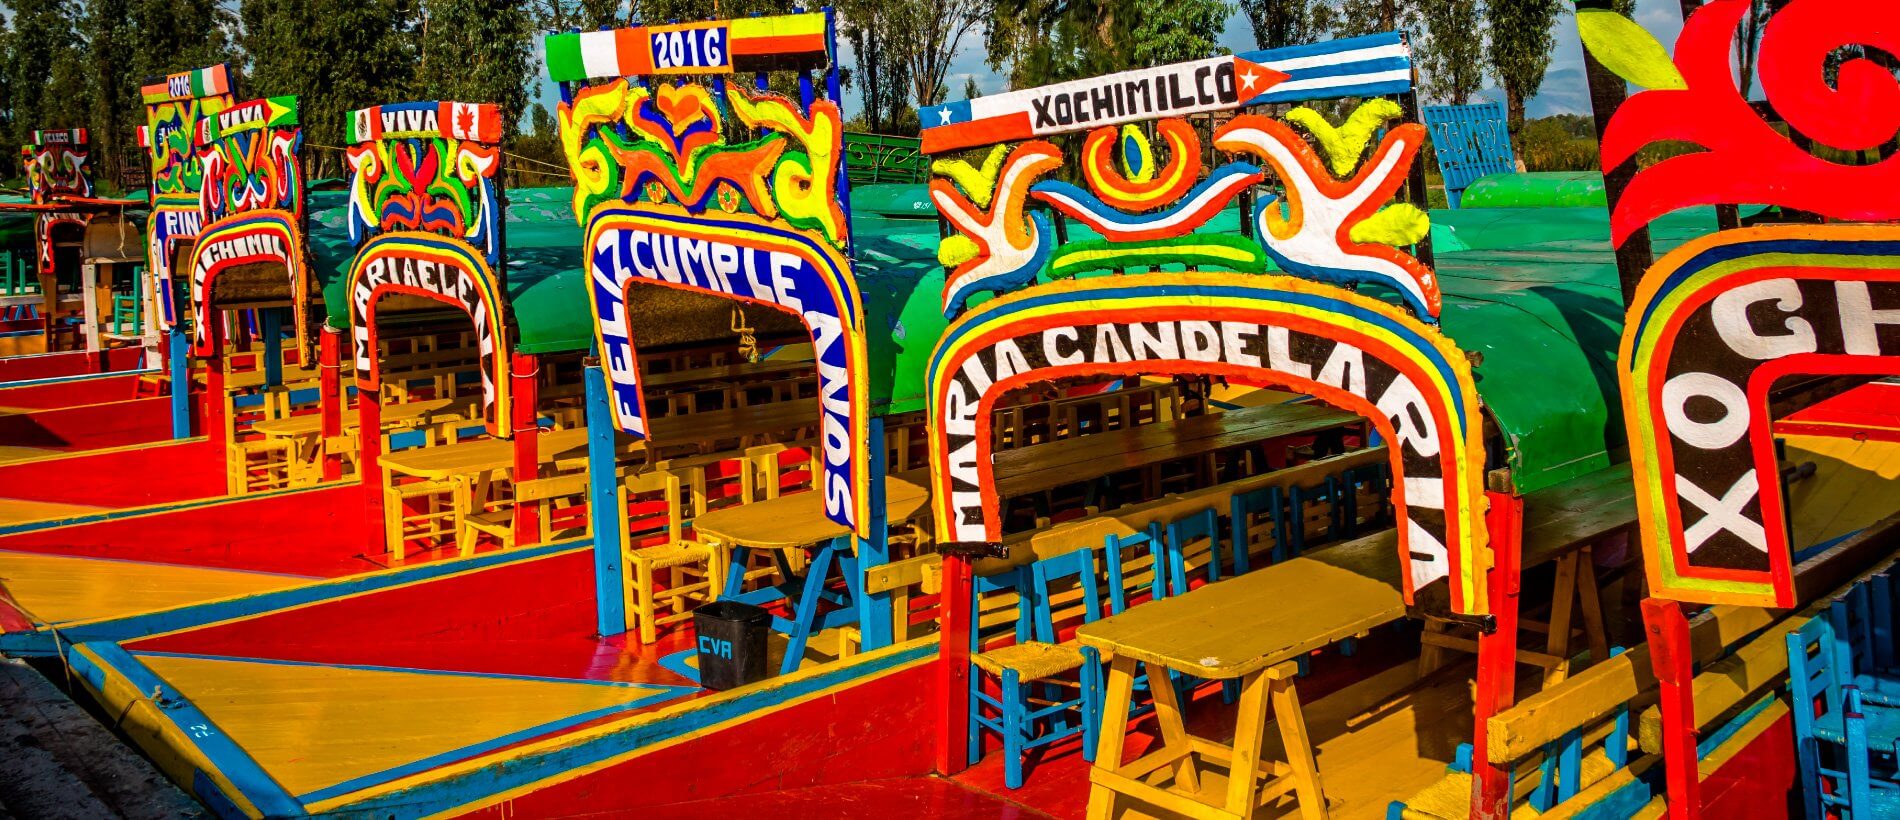 CoyoacanXochimilco.jpg